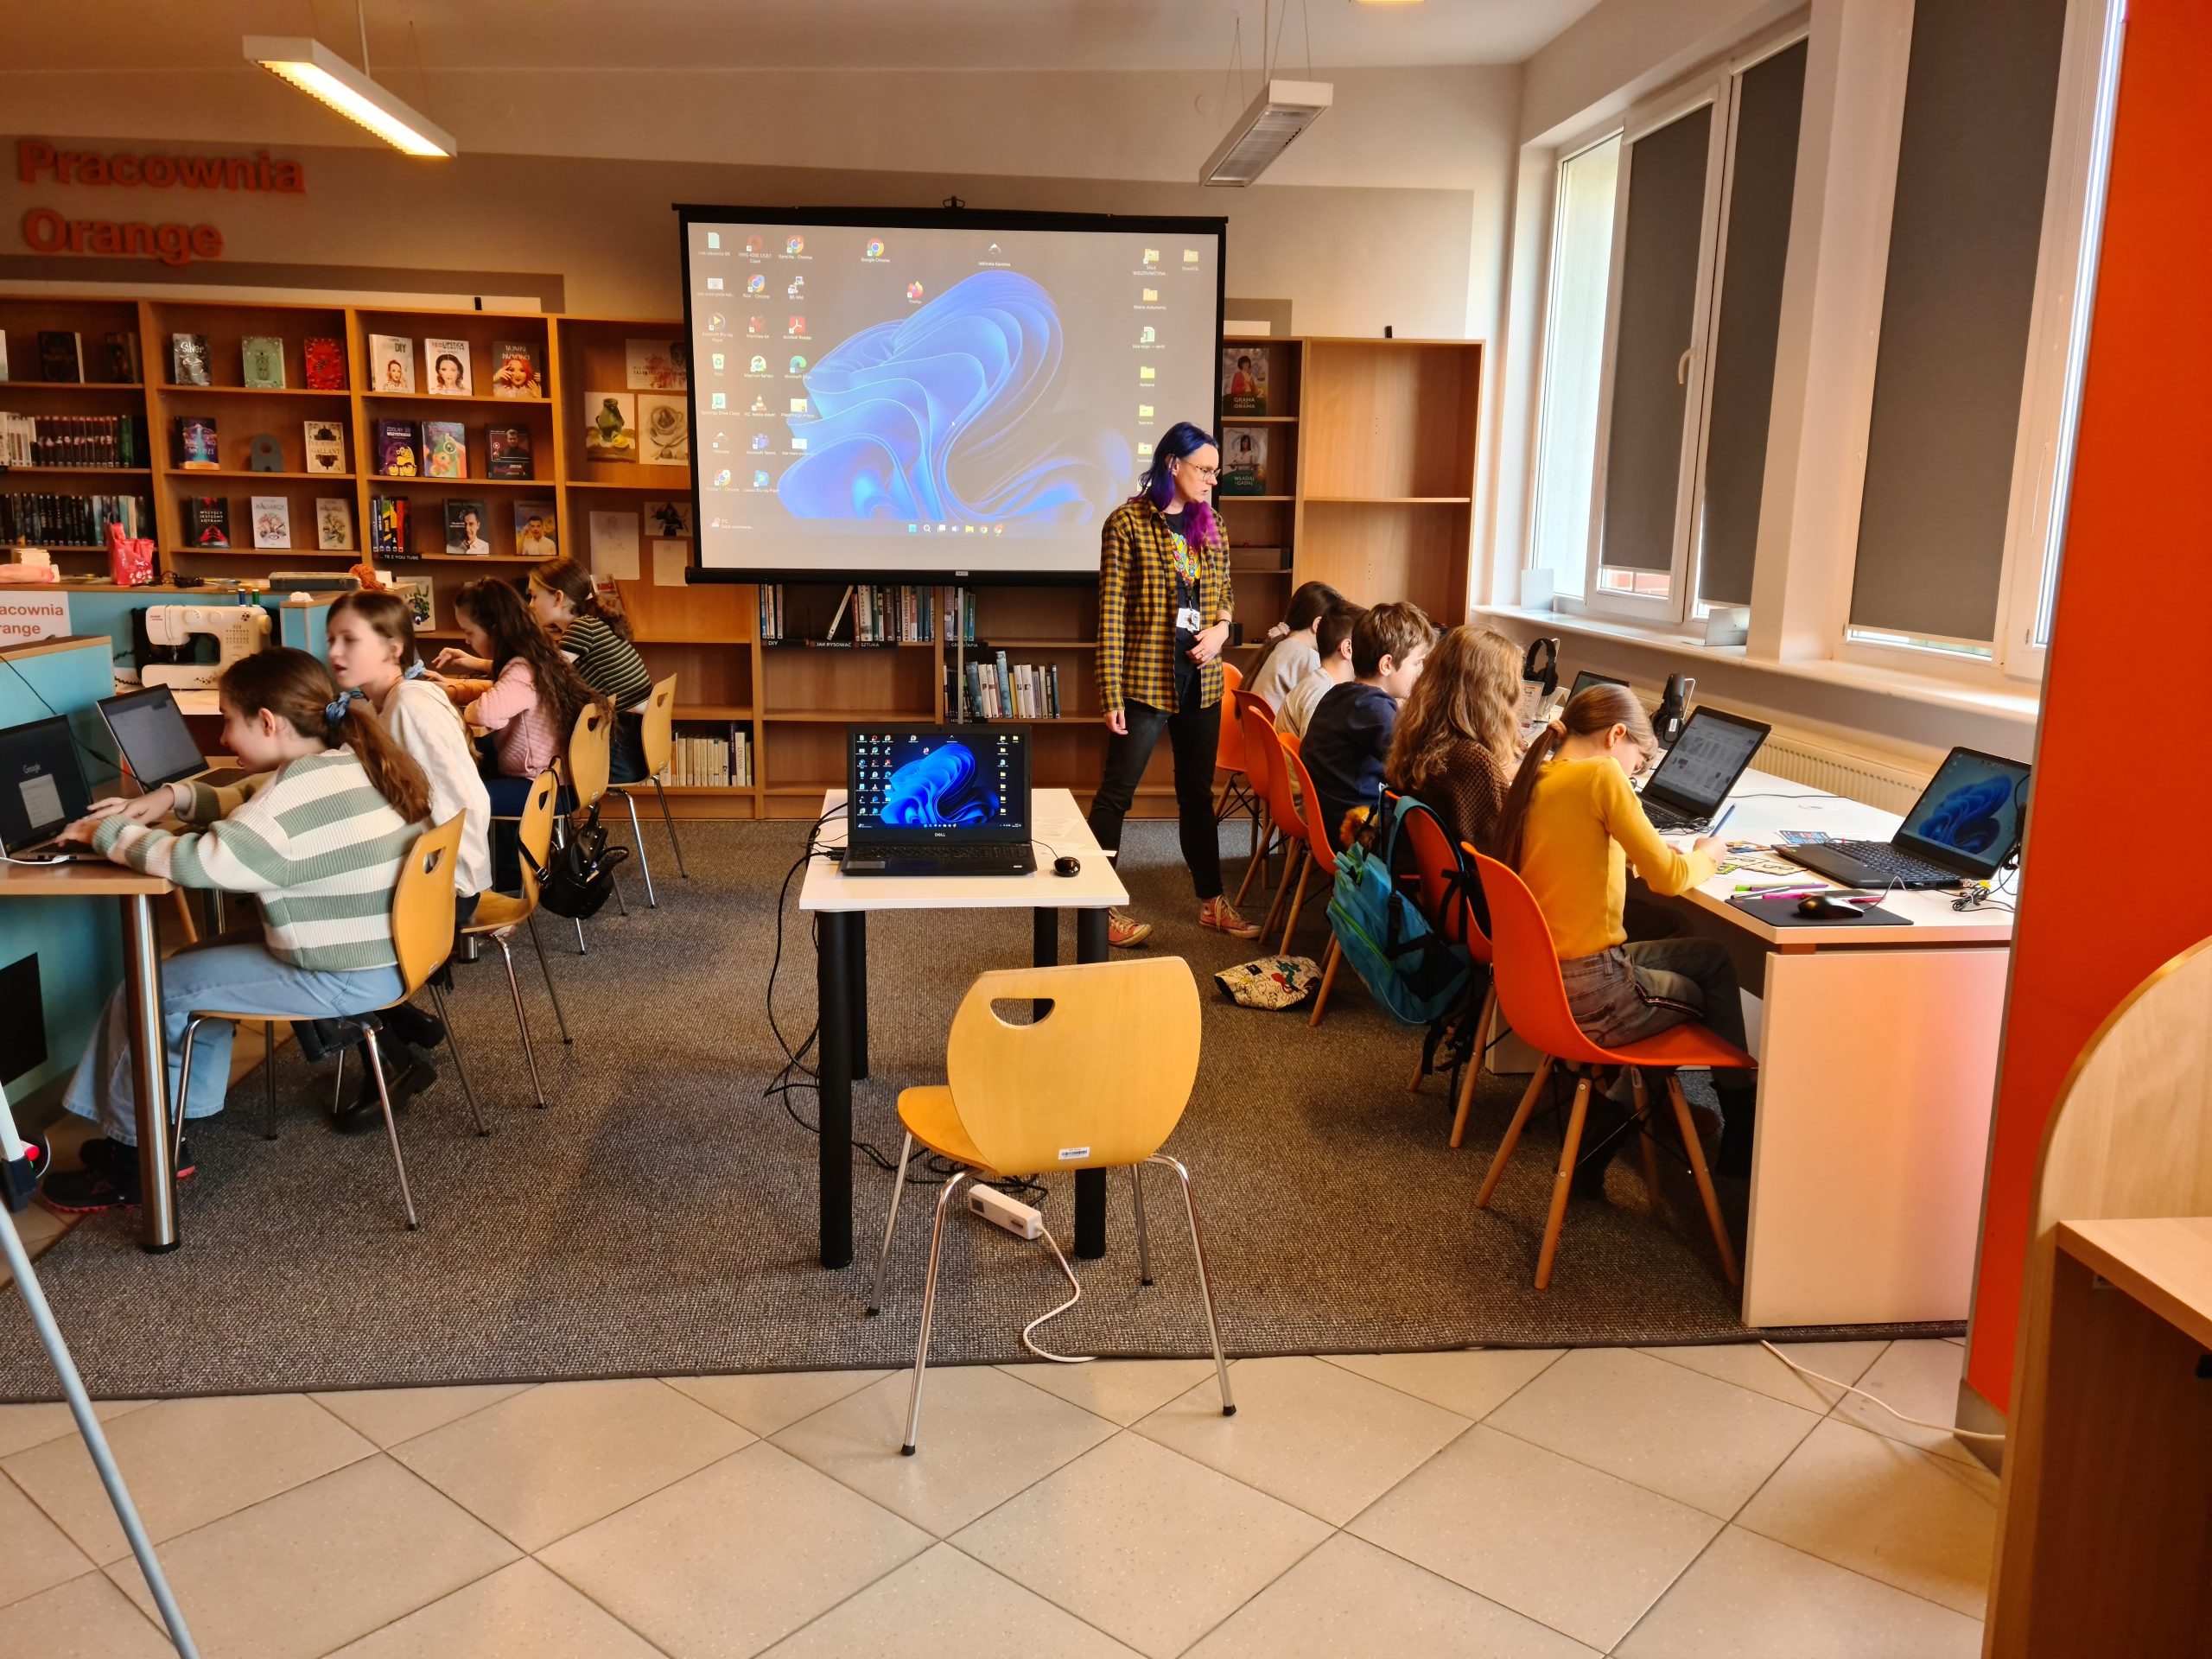 Grupa dzieci siedząca przy biurkach z laptopami, po środku stoi dorosła kobieta i biurko z laptopem, w tle ekran projekcyjny.